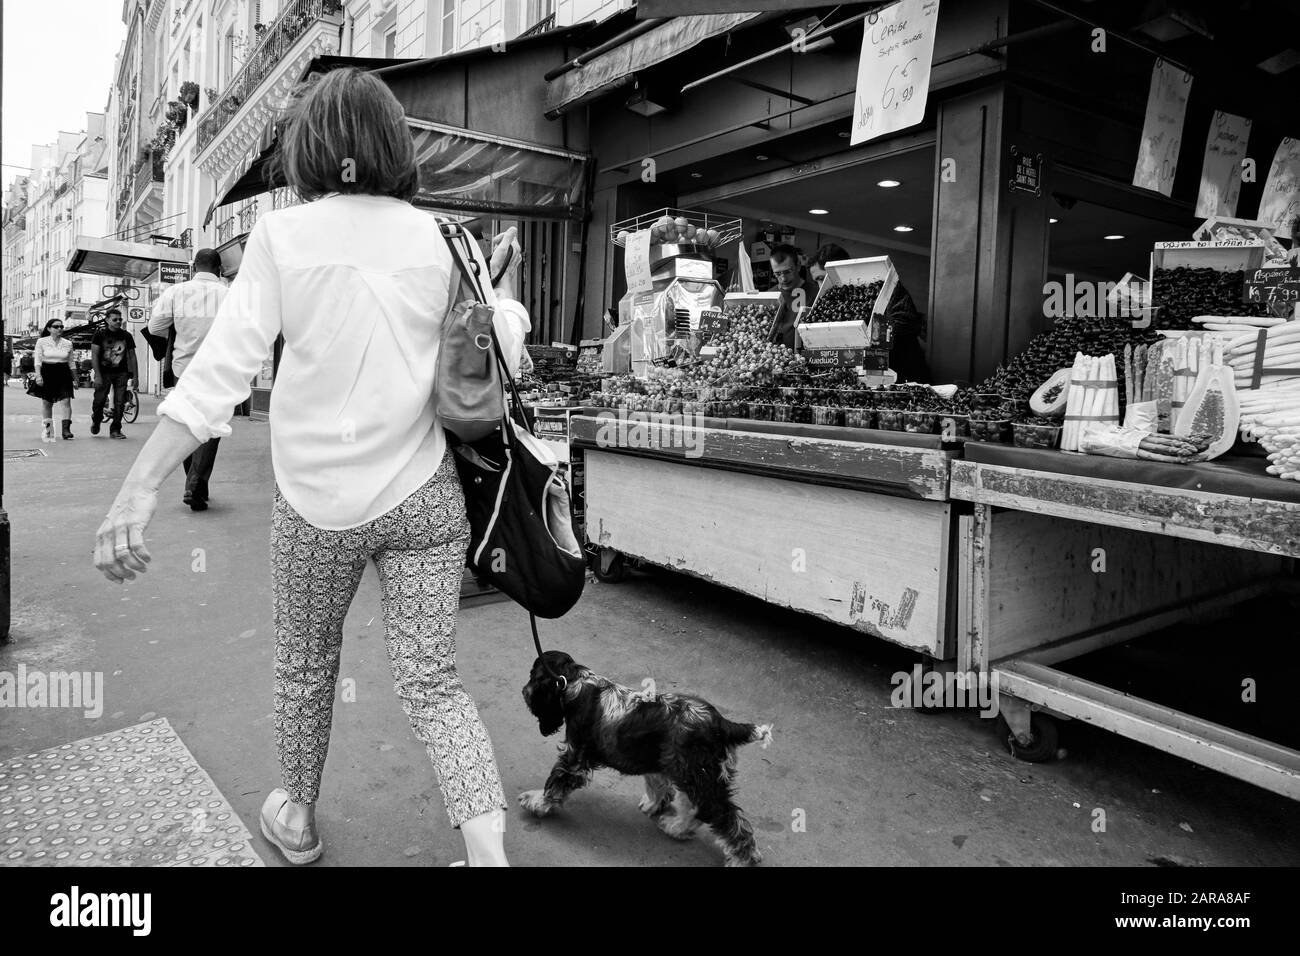 Frau, die Hund auf dem Straßenbelag, Obstladen, Rue Saint Antoine, Paris, Frankreich, Europa spazieren geht Stockfoto